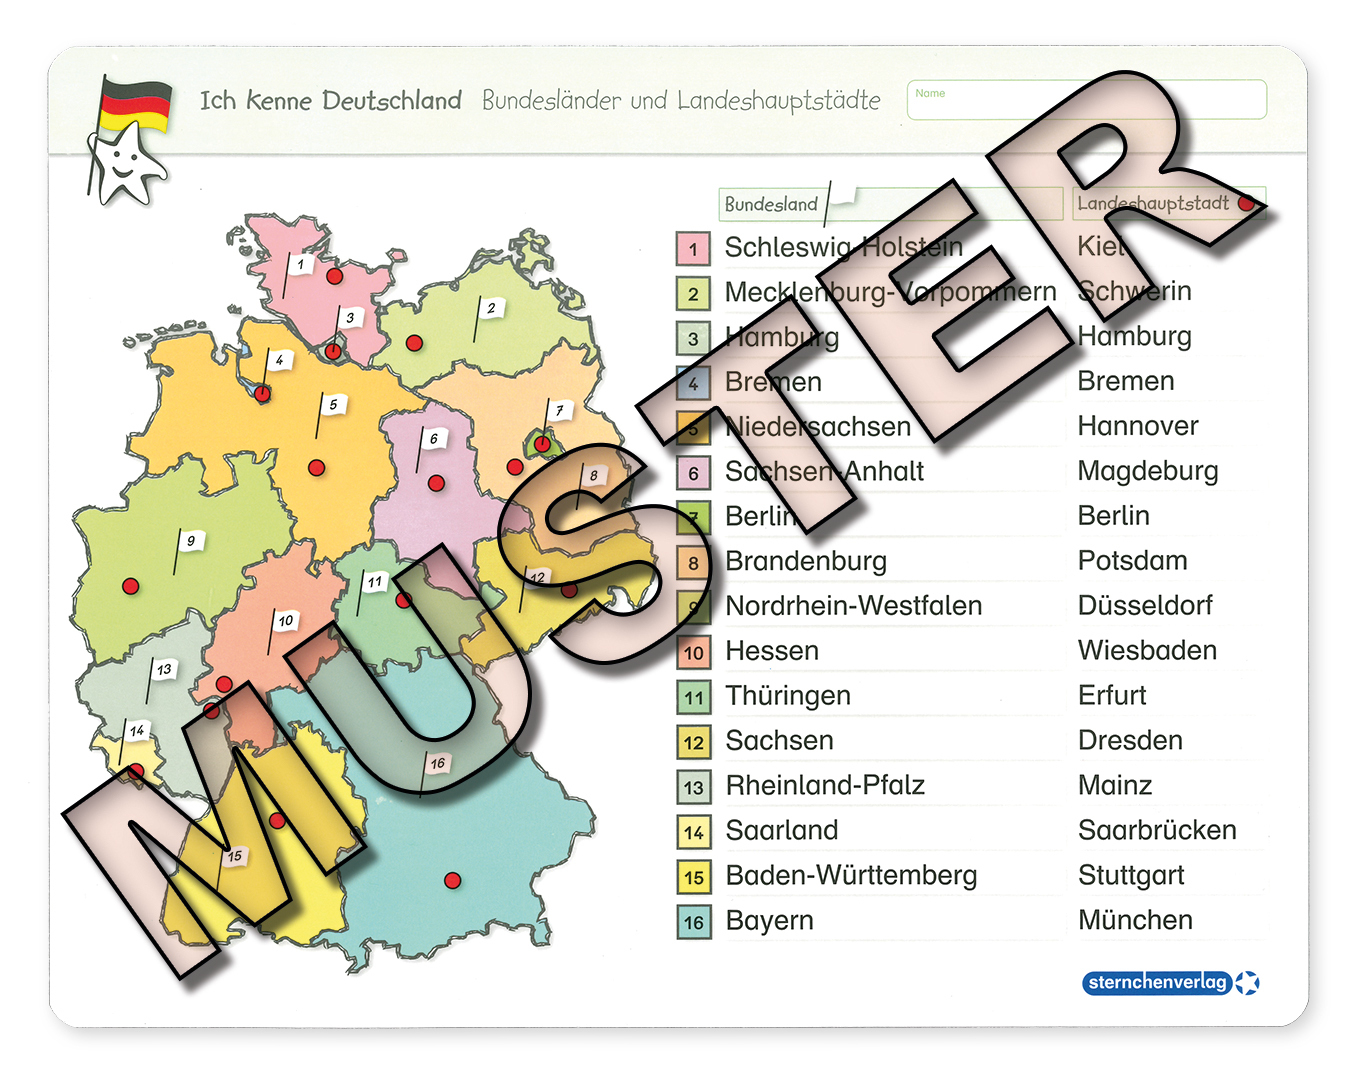 Ich Kenne Deutschland - Bundesländer Und Landeshauptstädte in Deutschland Bundesländer Landeshauptstädte